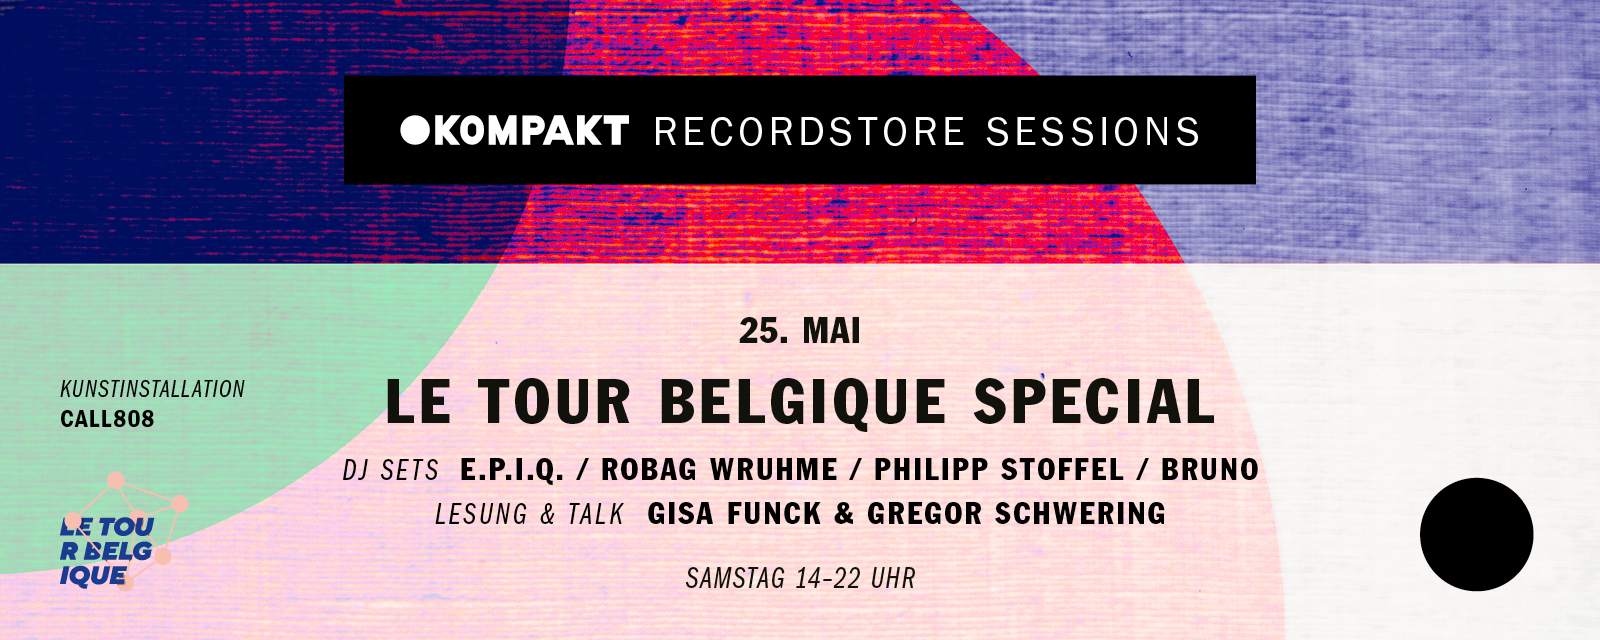 KOMPAKT Recordstore Session - Le Tour Belgique Special - Página frontal